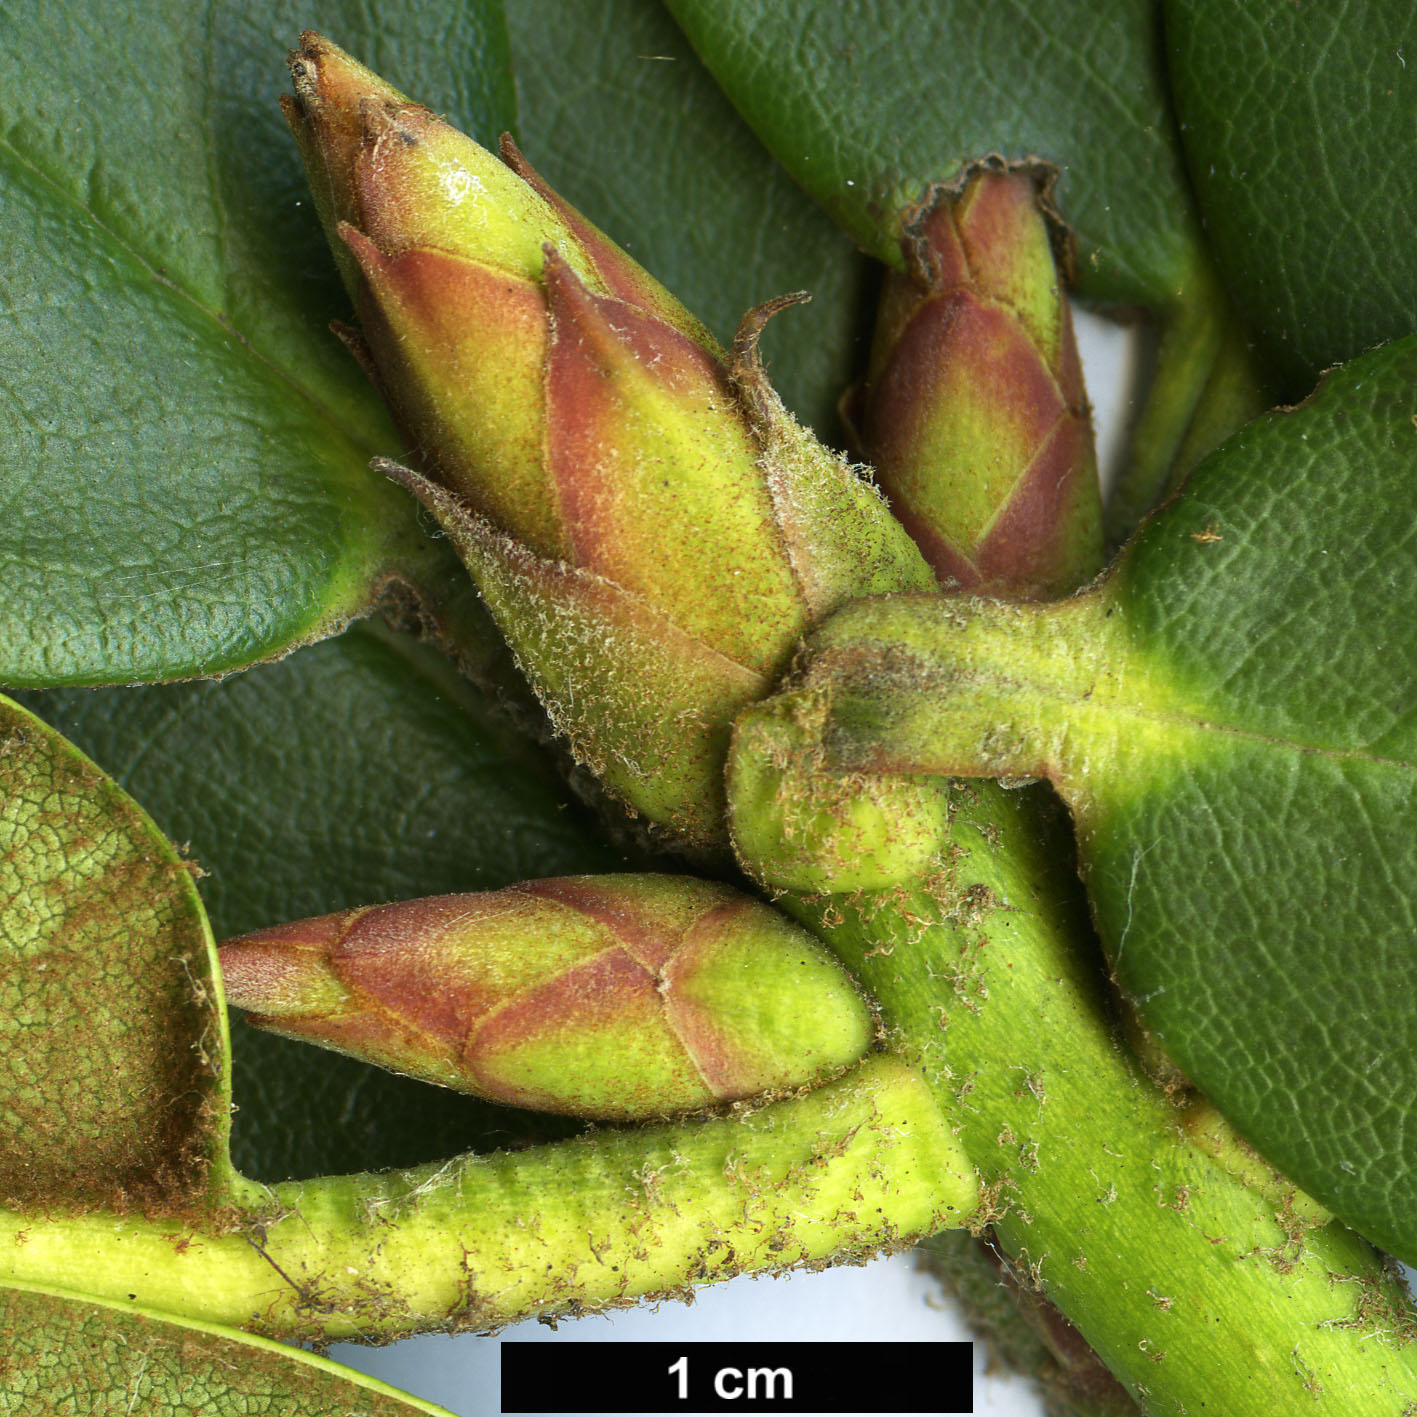 High resolution image: Family: Ericaceae - Genus: Rhododendron - Taxon: wallichii